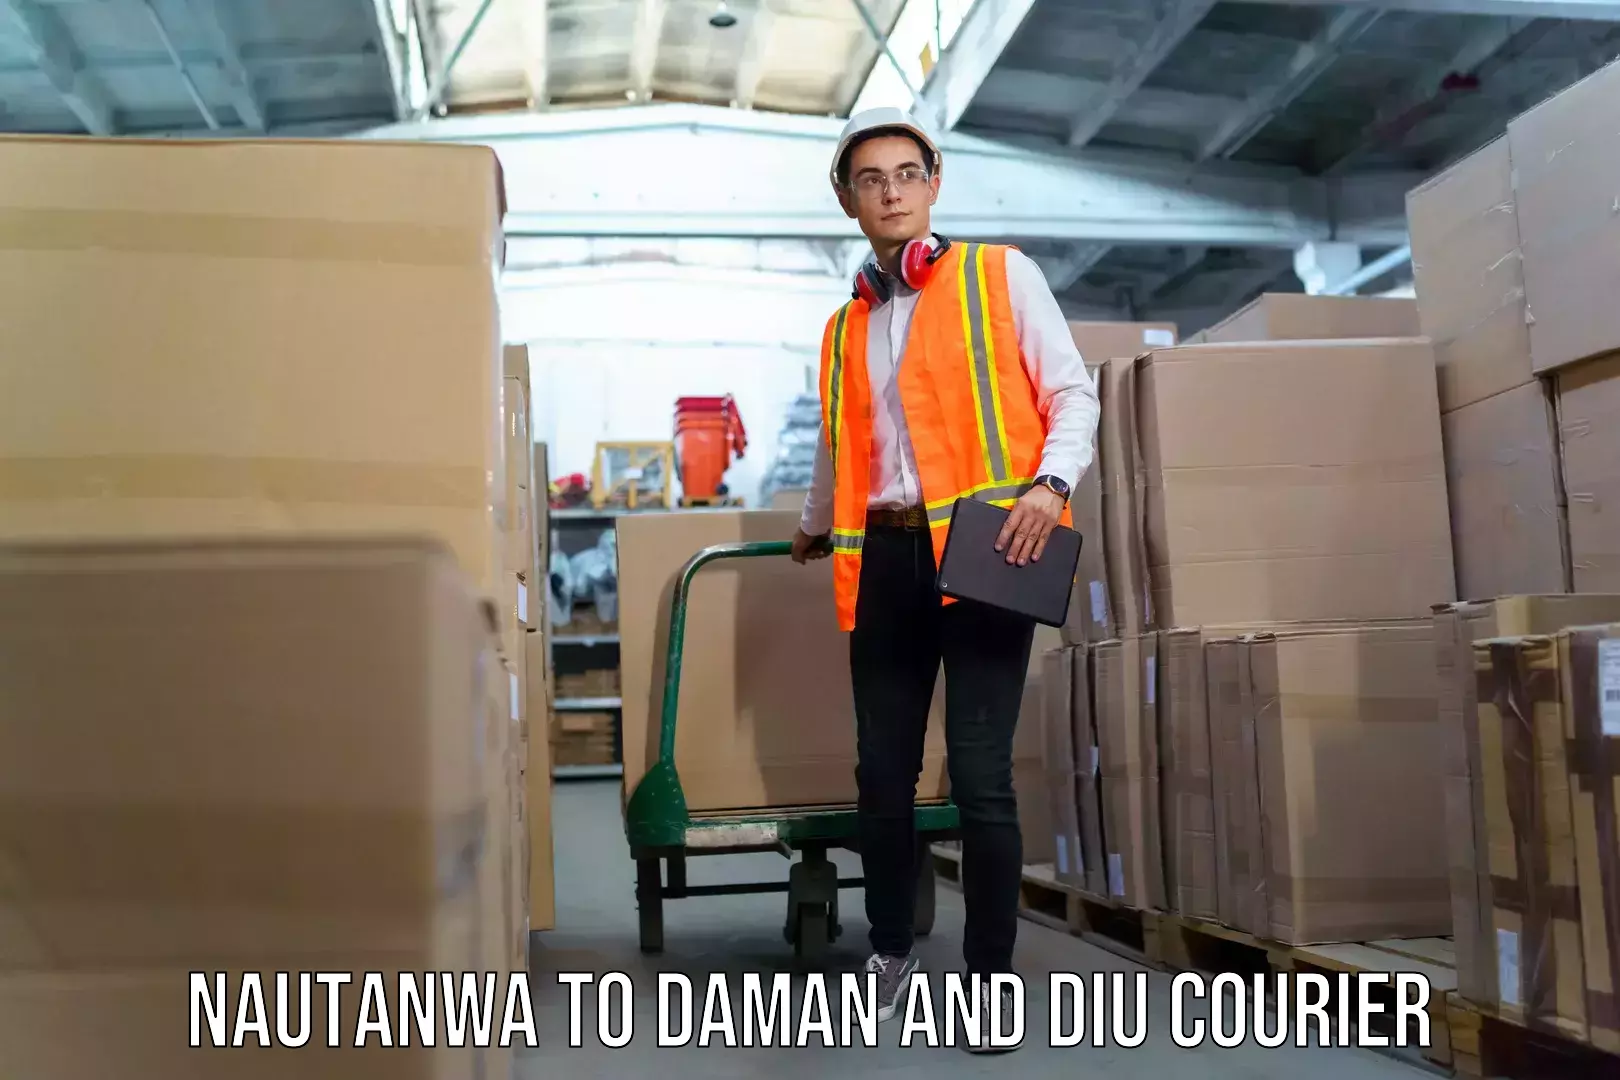 Luggage shipment tracking Nautanwa to Diu